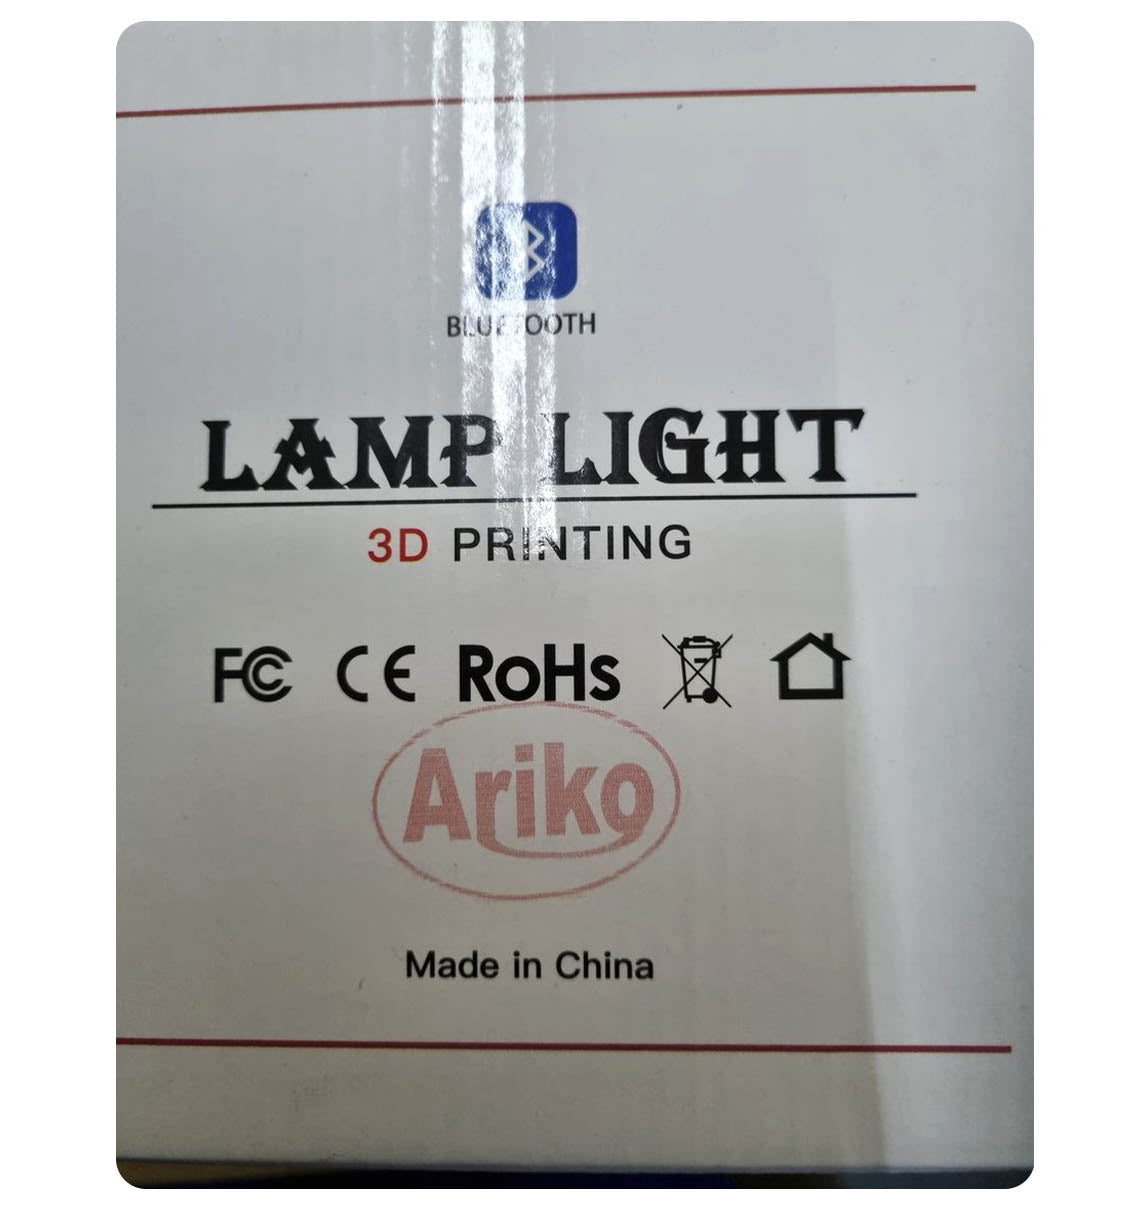 Ariko Veilleuse 3D lune - lumière étoile - 15 cm - Lampe à poser - Batterie 15 à 89 heures - 16 couleurs LED dimmables et Télécommande